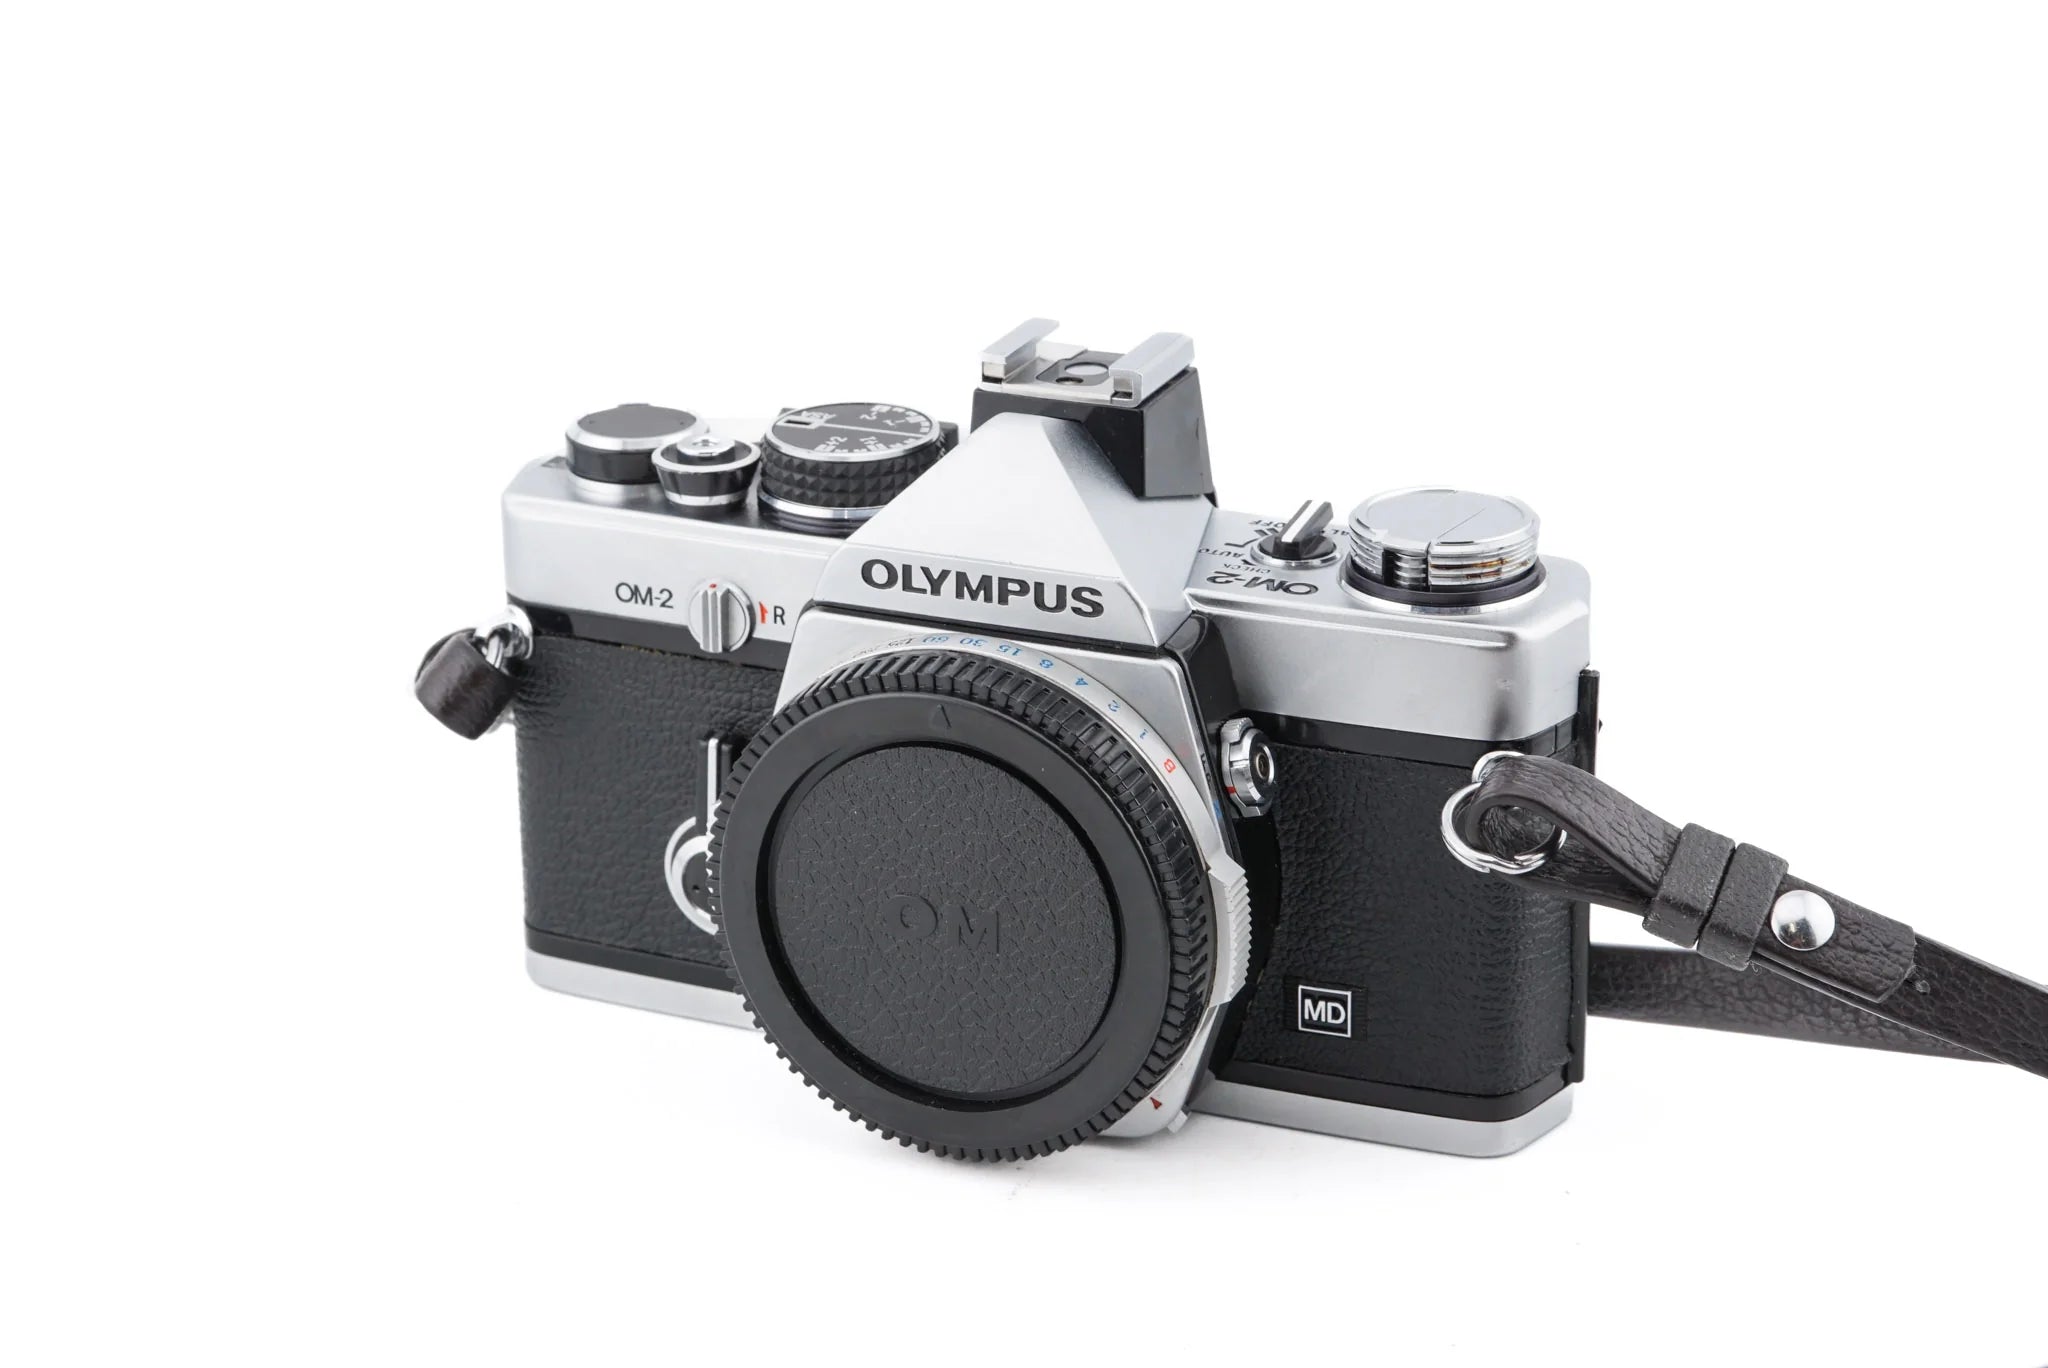 Olympus OM-2 - 35mm Film Camera body - with 6 month warranty